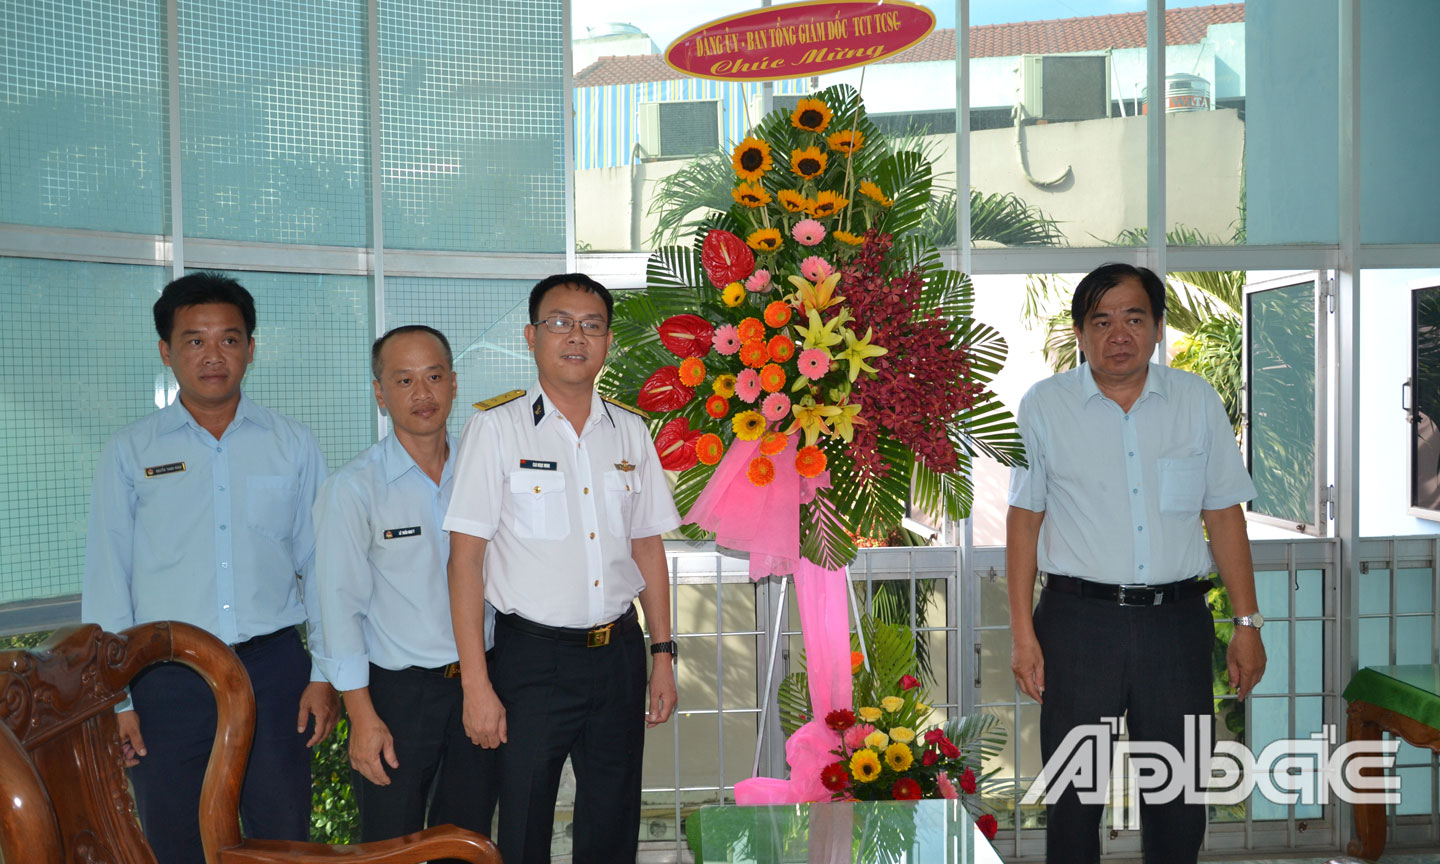 Tổng Công ty Tân Cảng Sài Gòn thăm, tặng quà Báo Ấp Bắc.